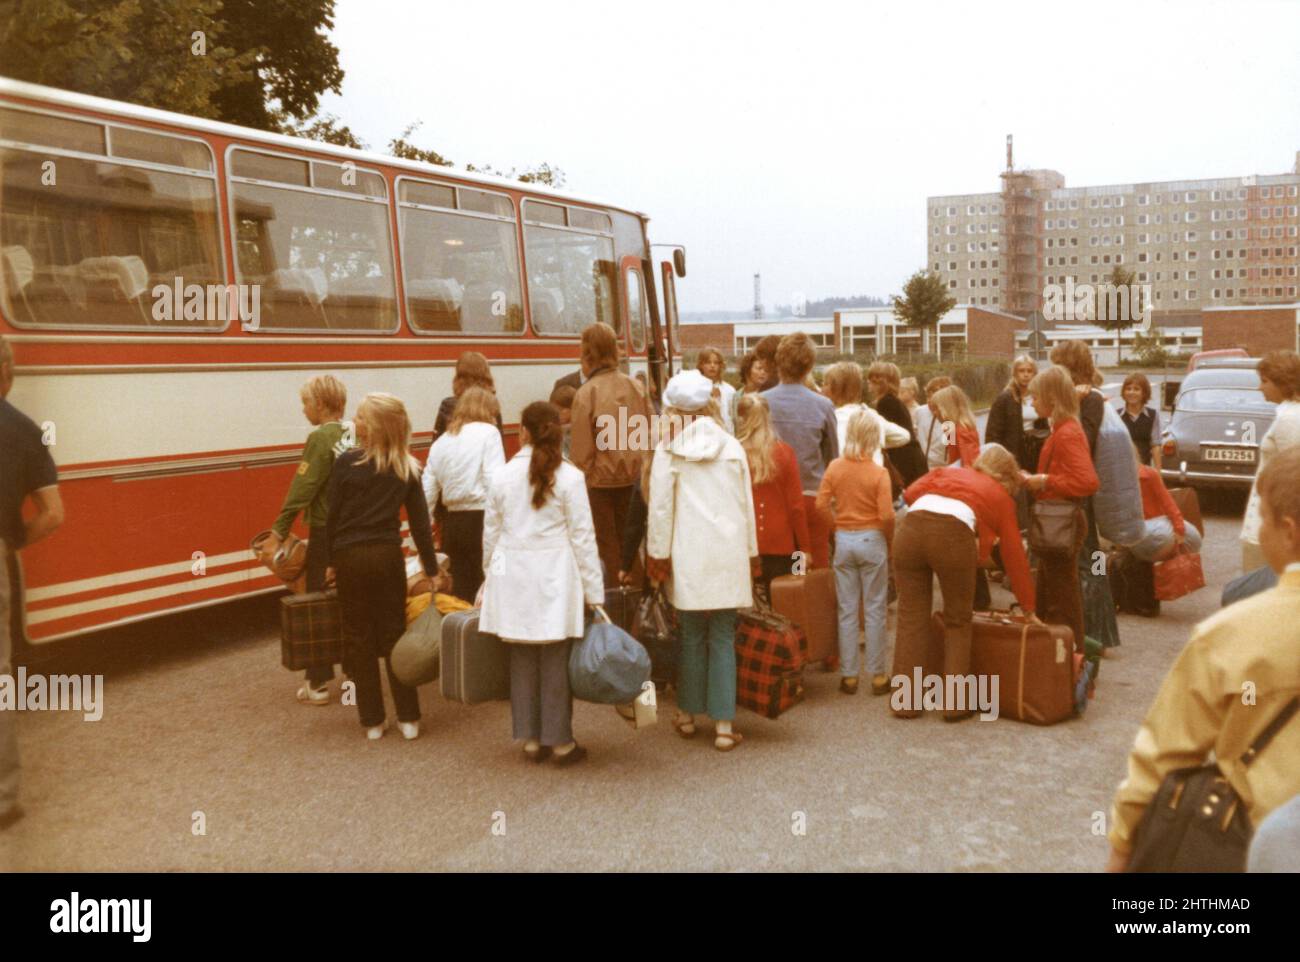 Fotografía de los años 70 de niños haciendo cola con equipaje para el viaje en autobús escolar, Suecia Foto de stock